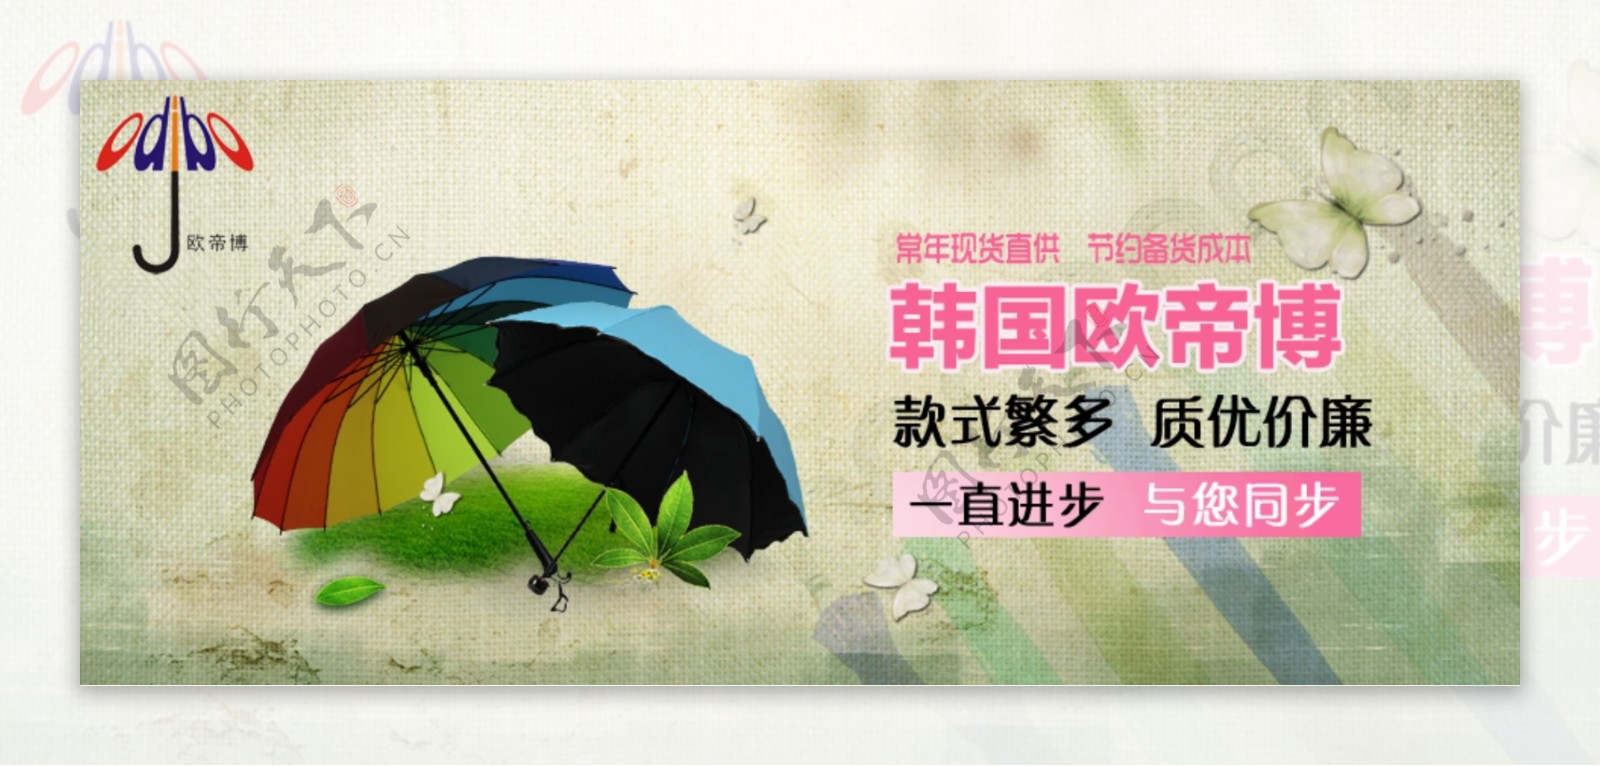 淘宝雨伞海报